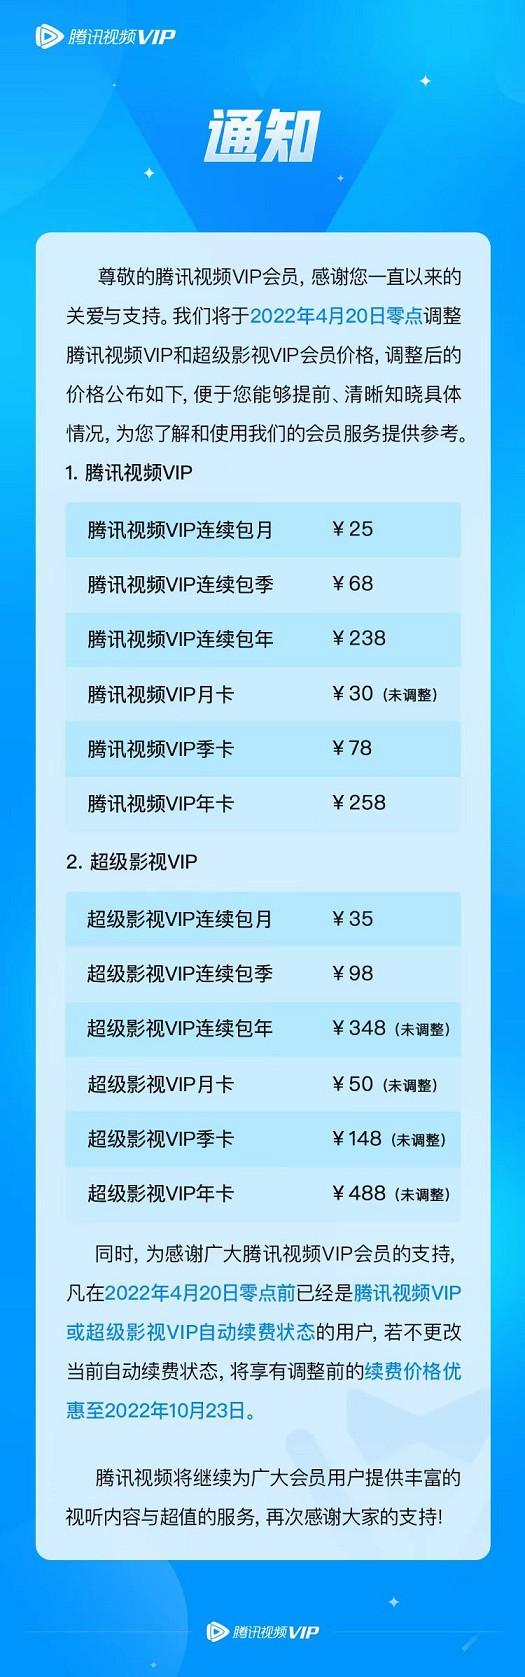 芜湖~腾讯视频VIP要涨价了